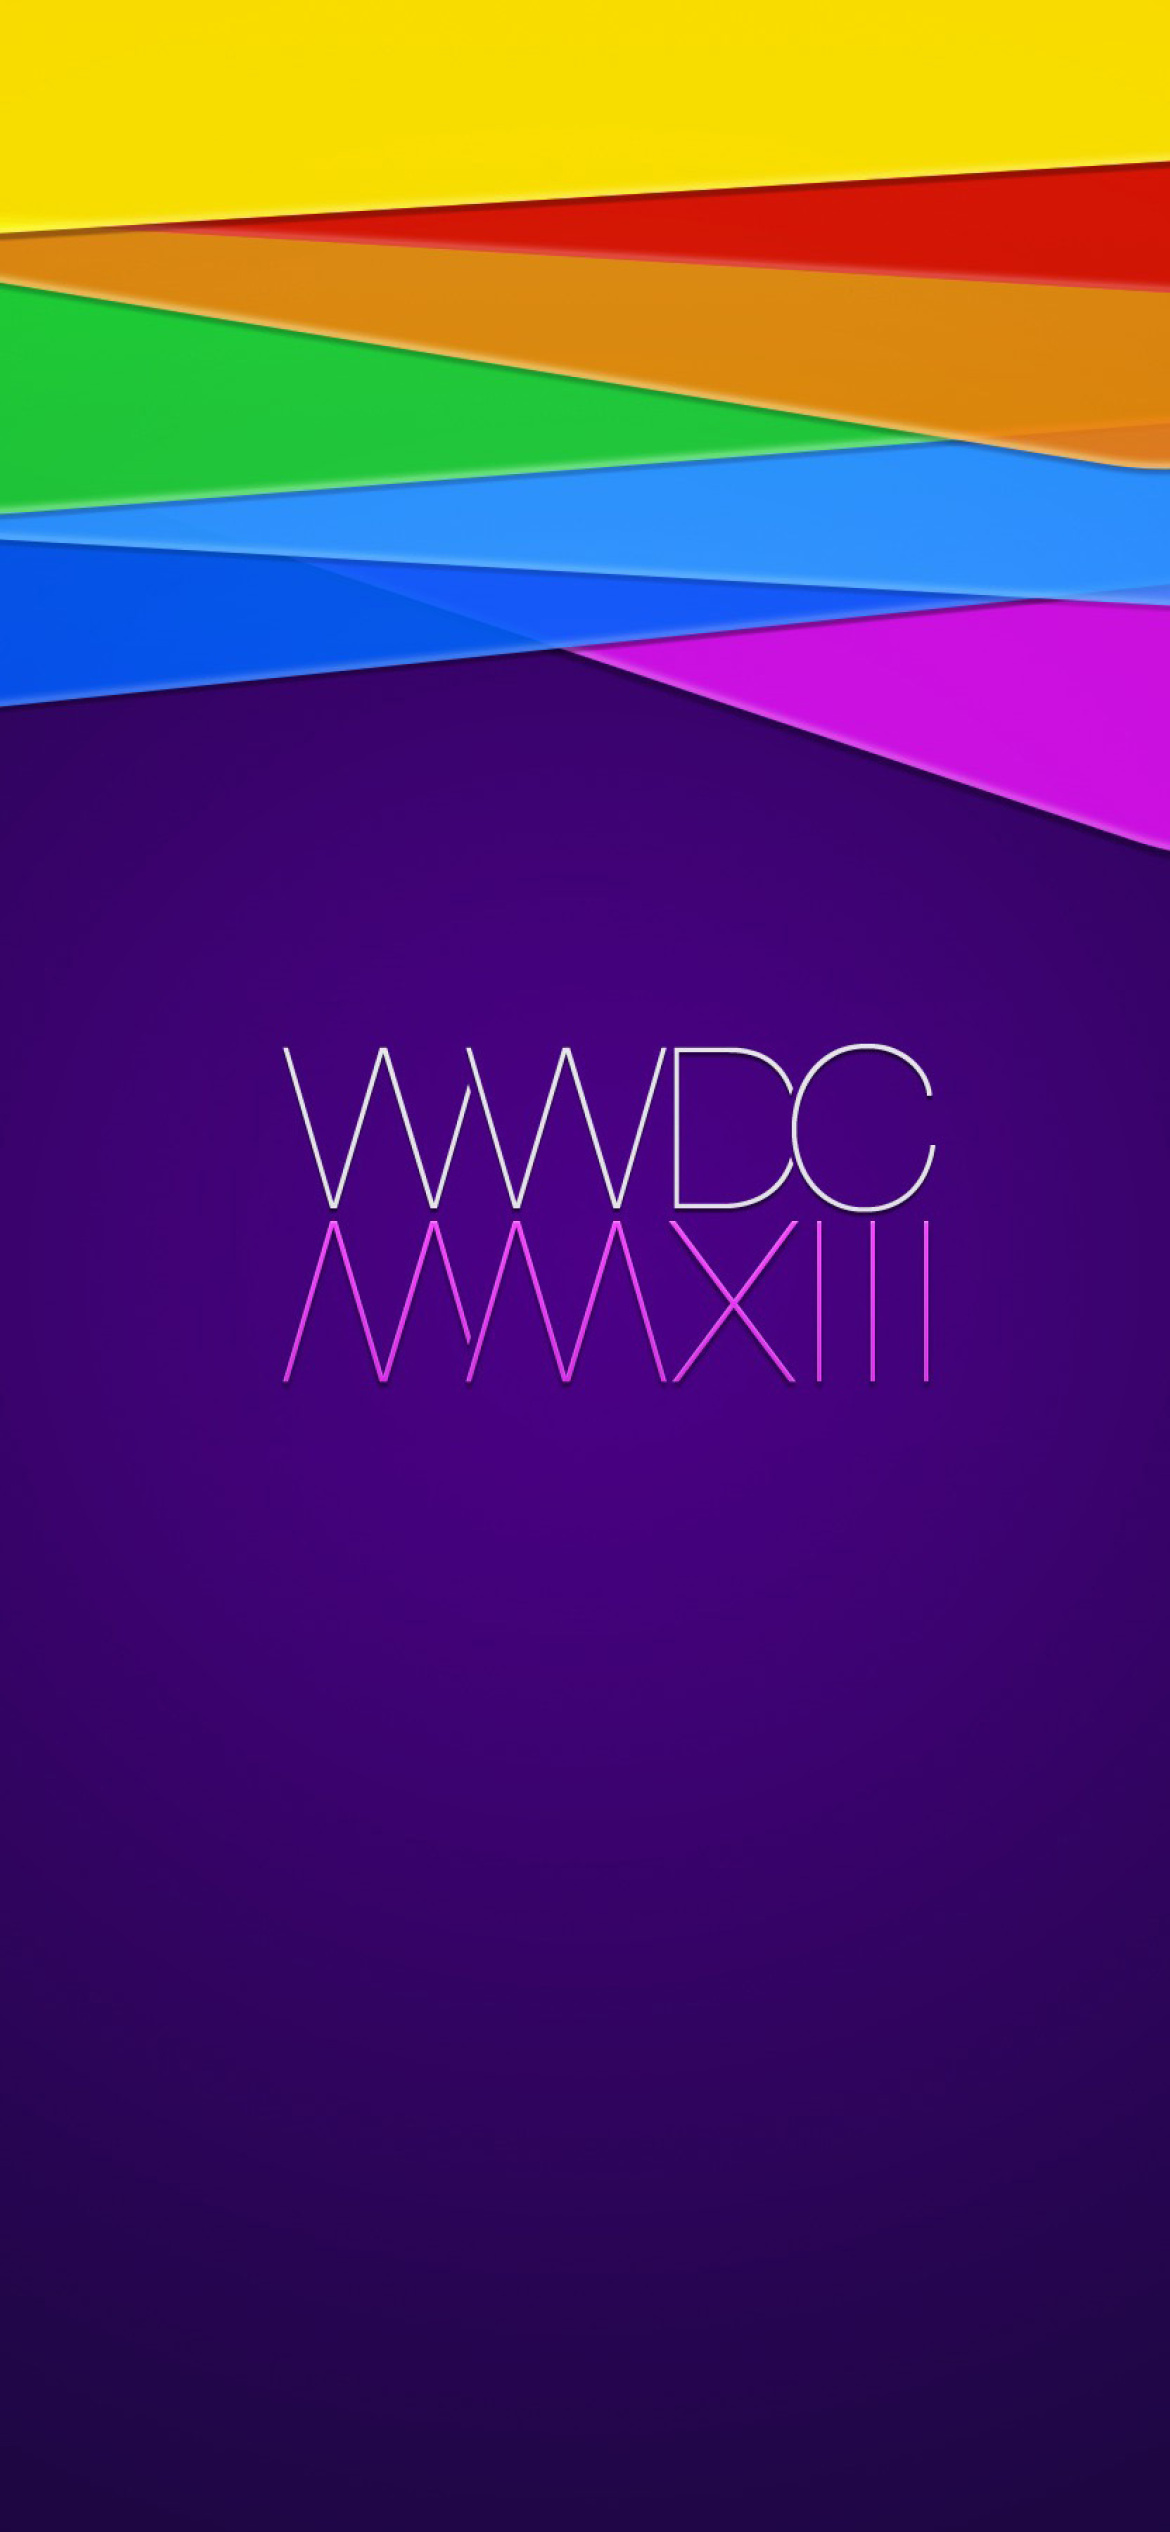 Sfondi WWDC, Apple 1170x2532